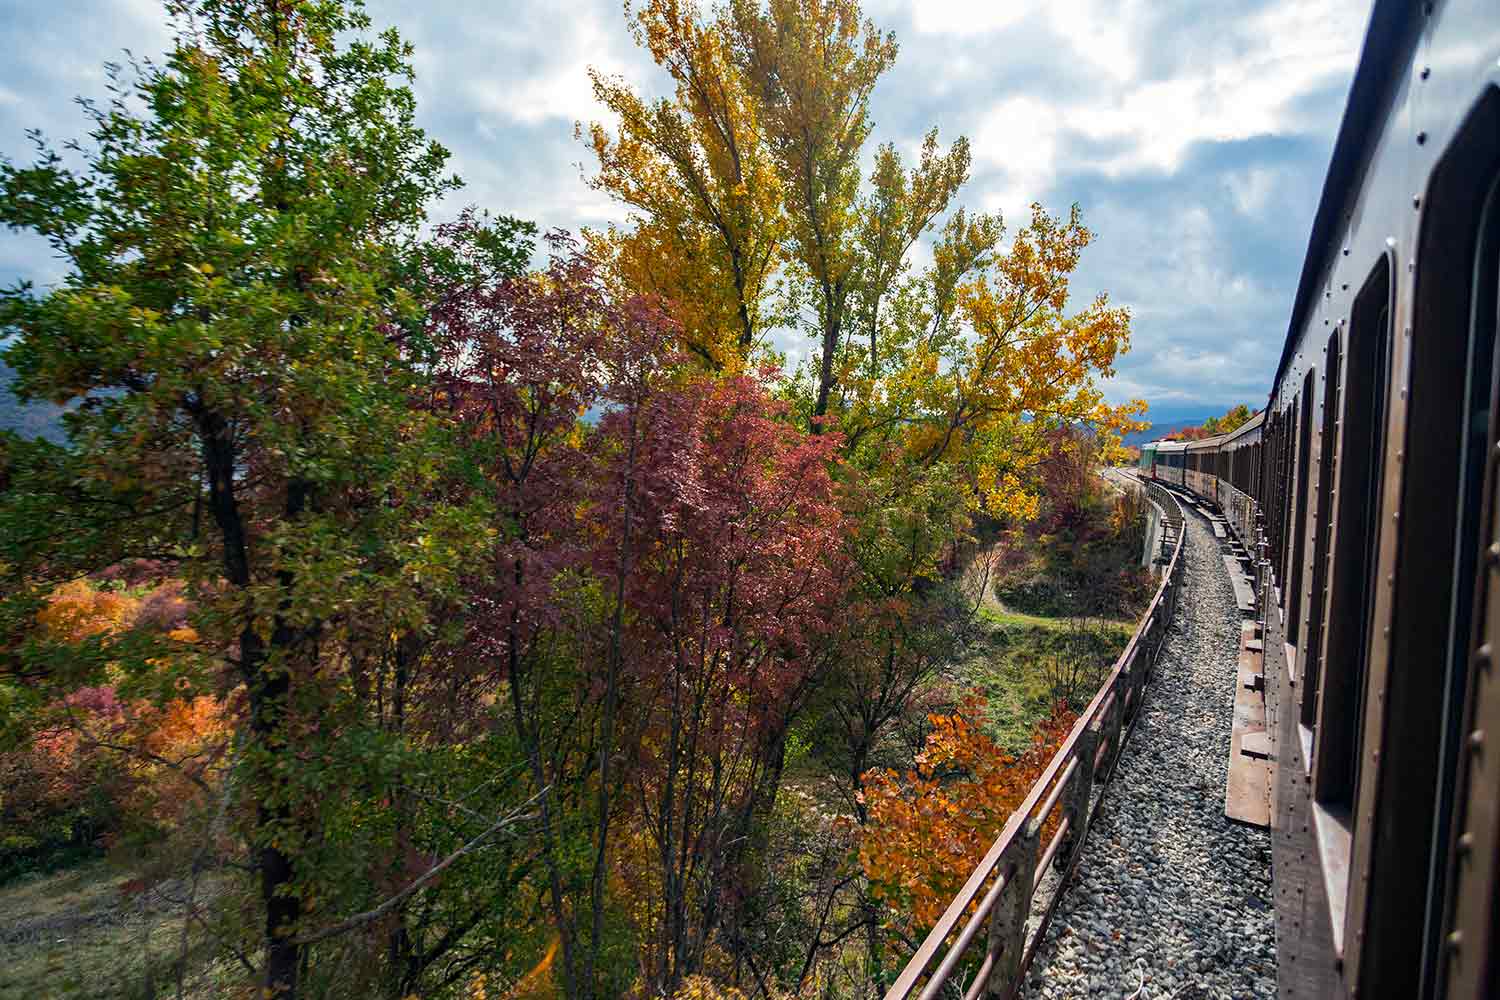 Viaggio in treno lungo la Transiberiana d'italia, tra monti e boschi d'Abruzzo in autunno